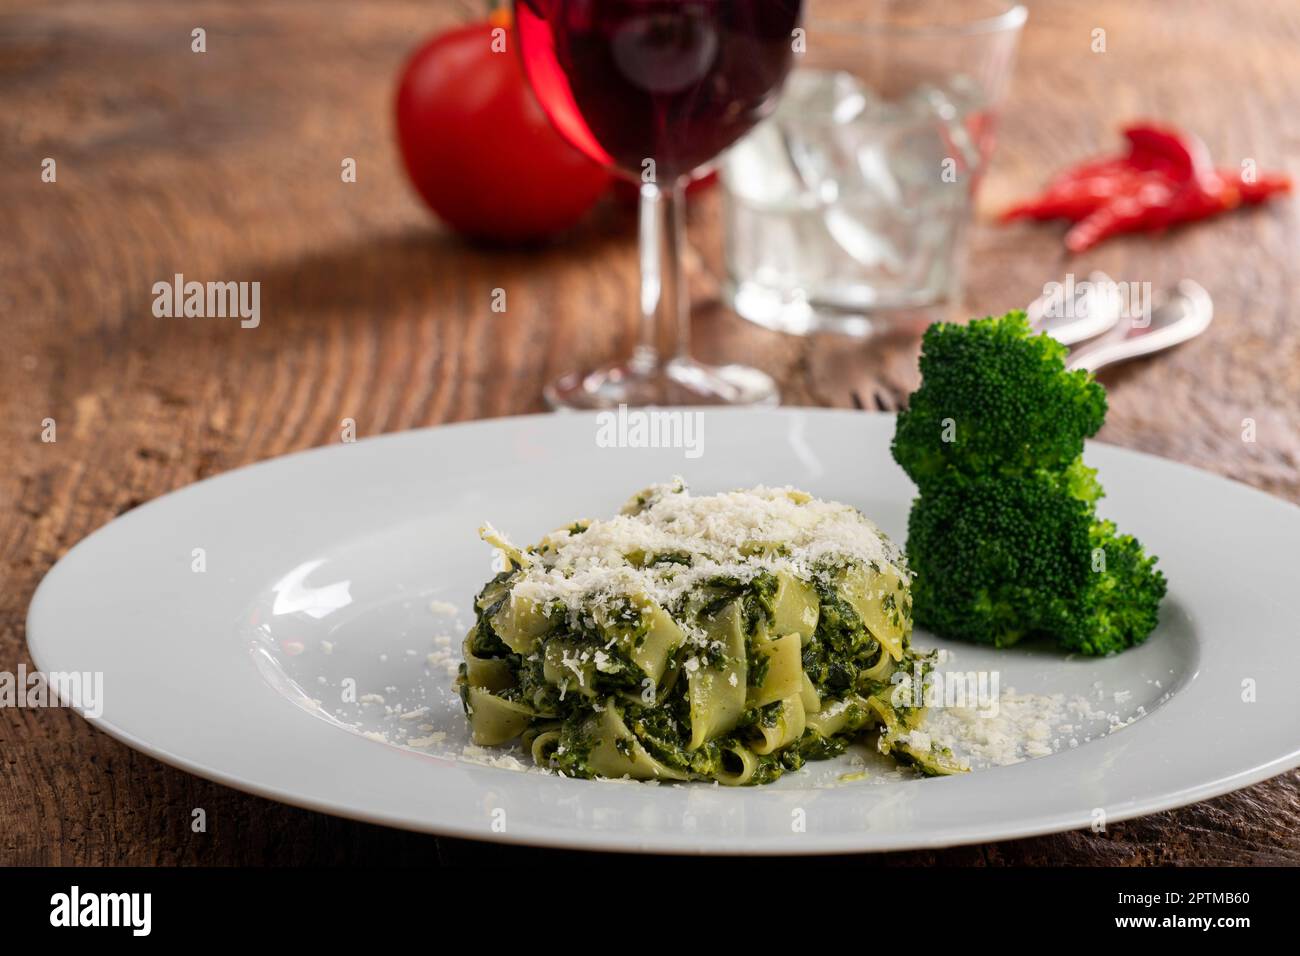 italian tagliatelli pasta with spinach sauce Stock Photo